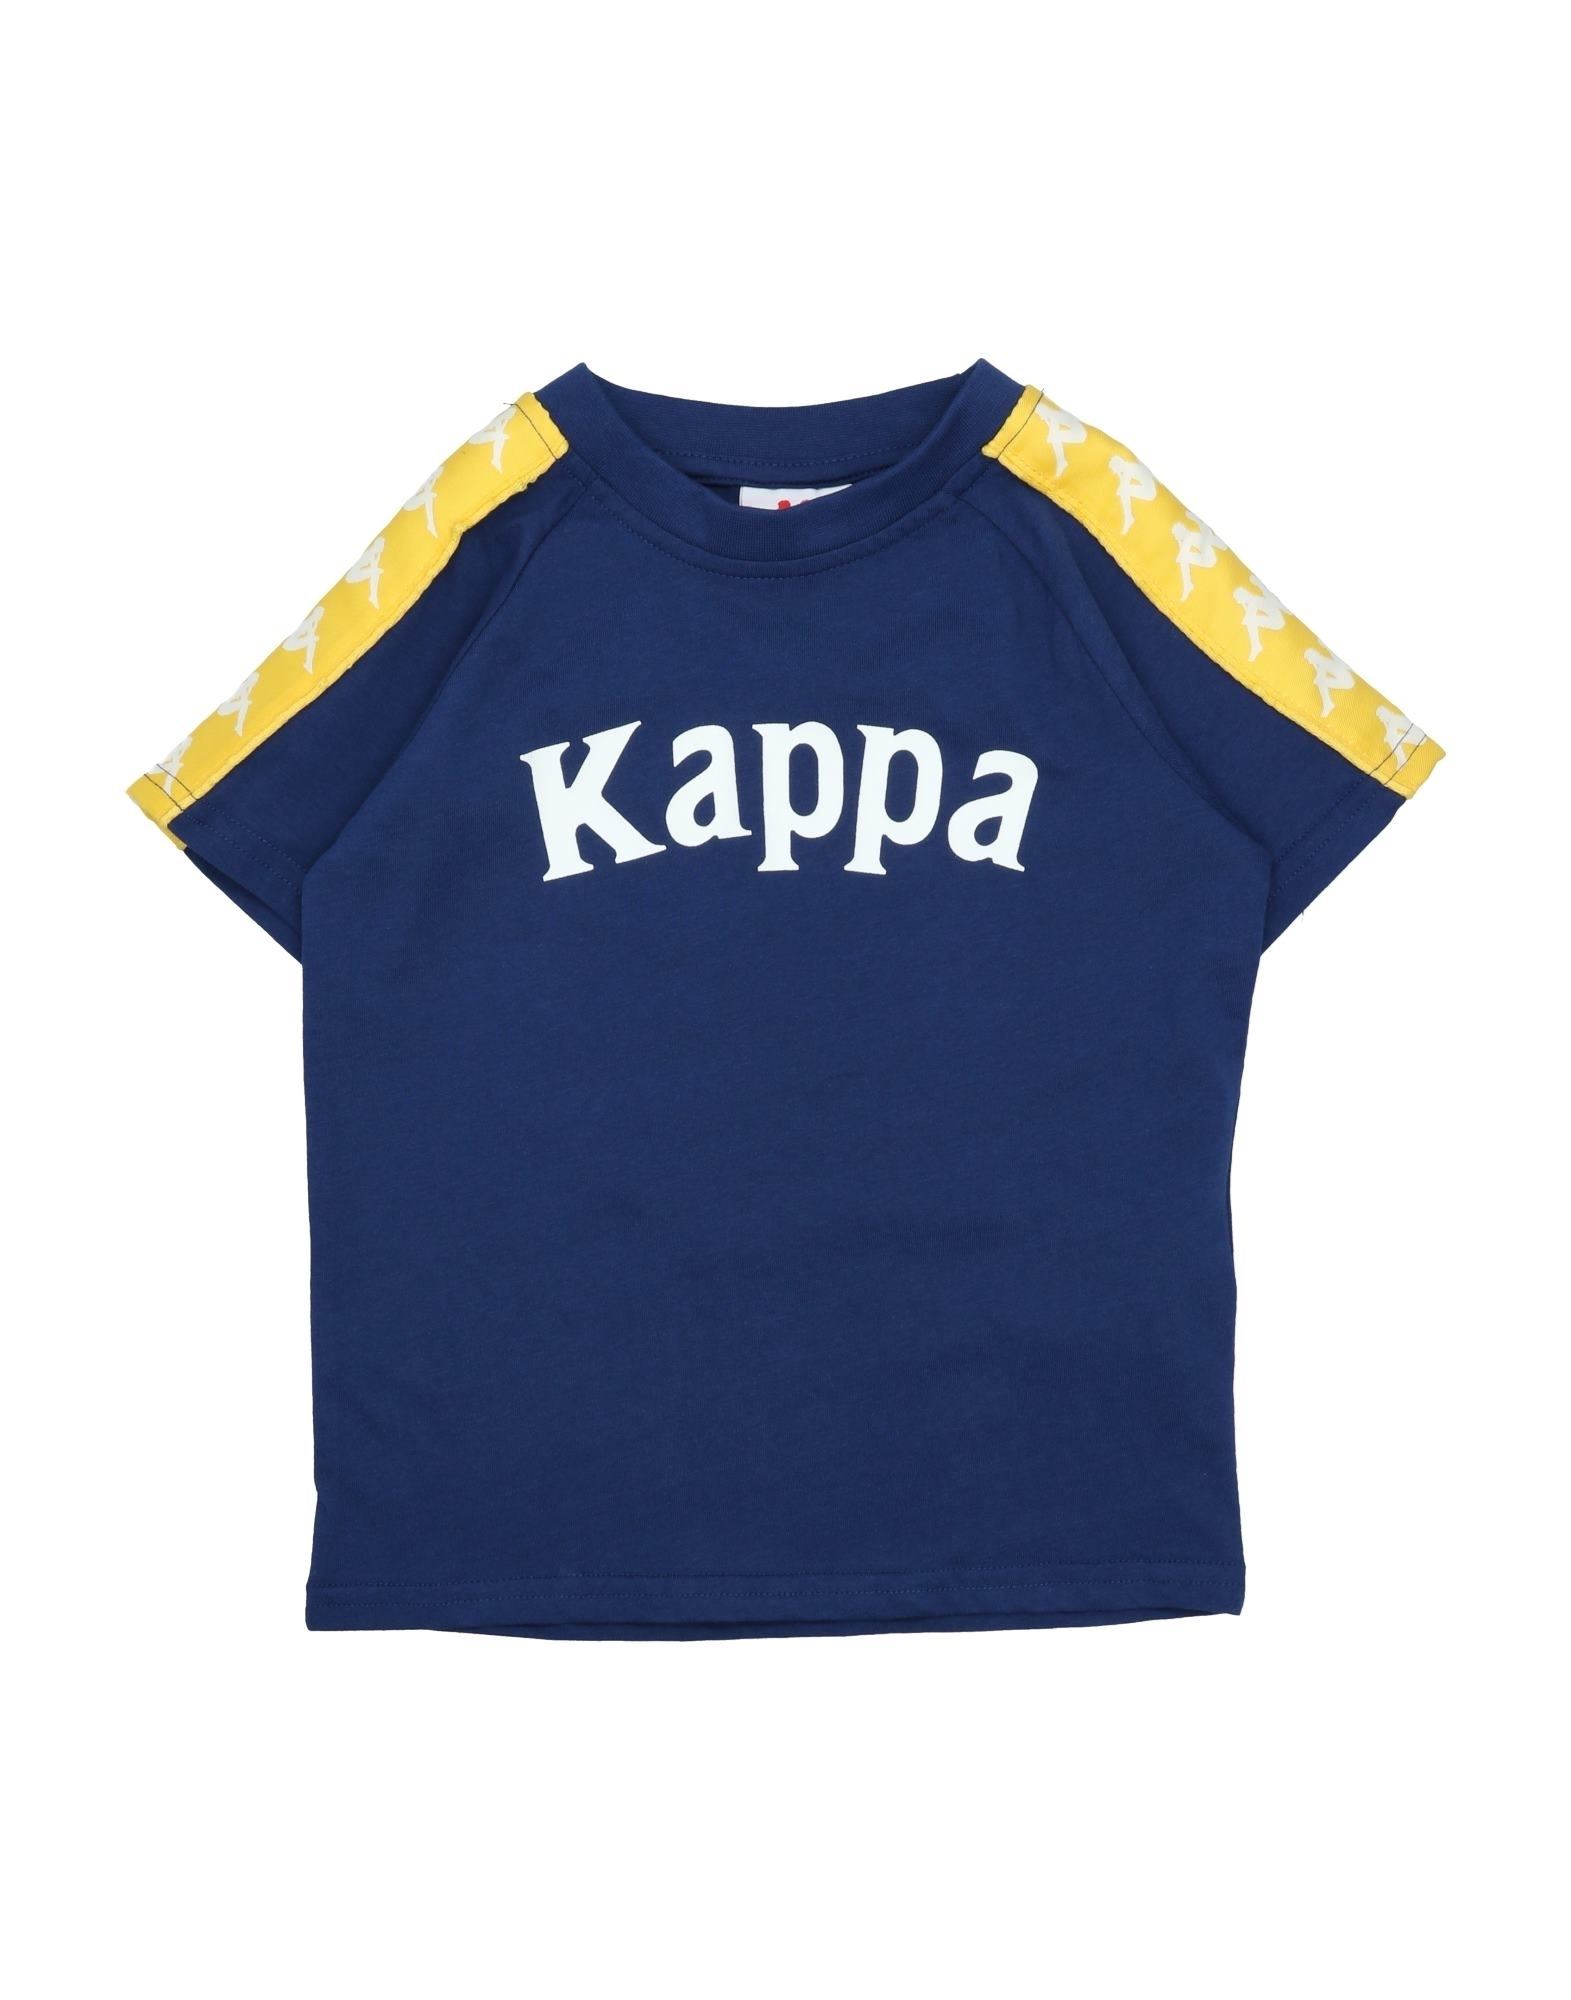 Kappa Kids' T-shirts In Blue